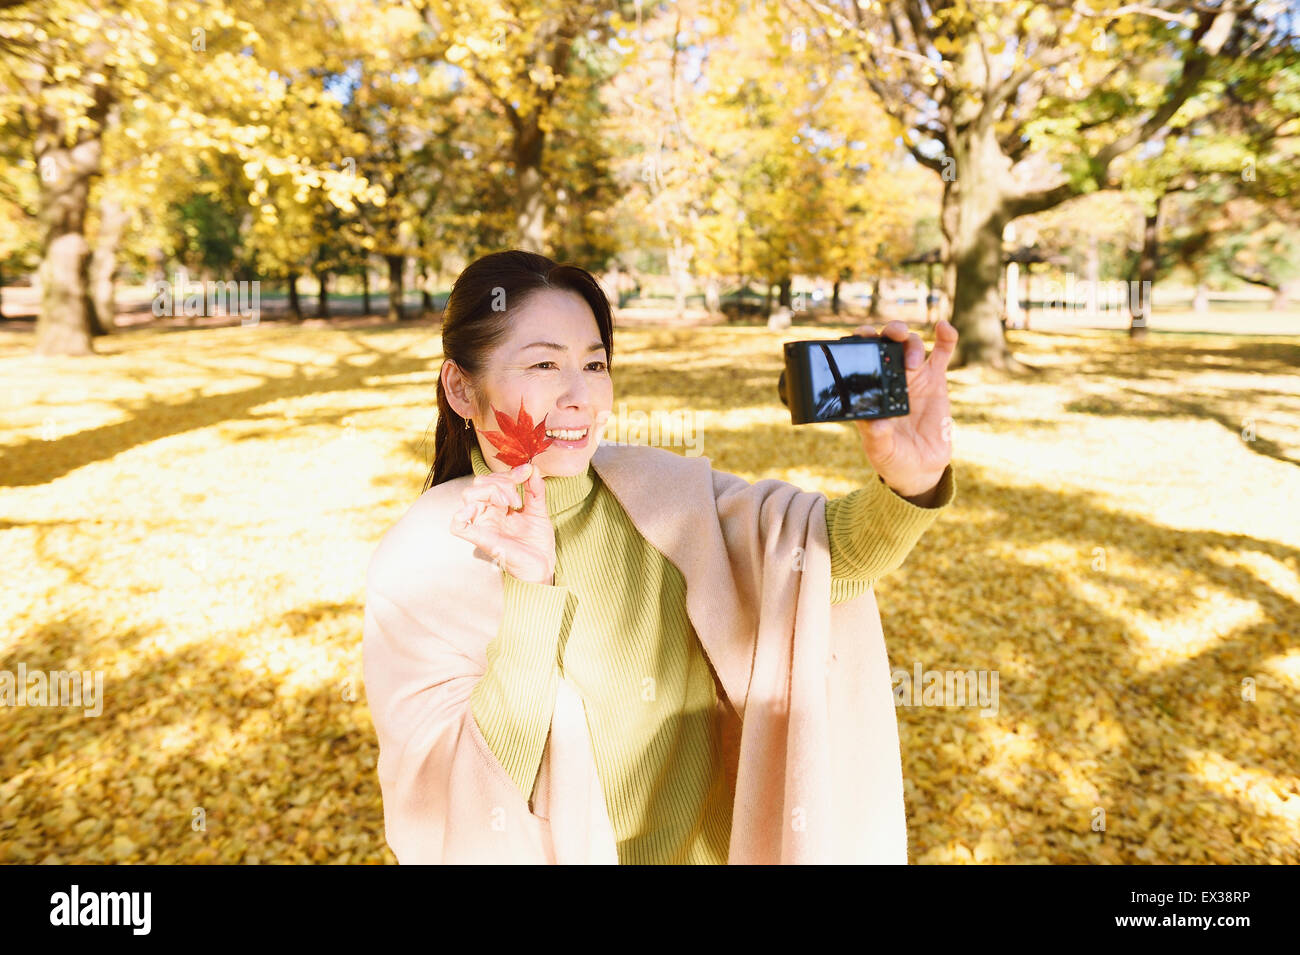 Senior donna giapponese prendendo un selfie in un parco della città in autunno Foto Stock